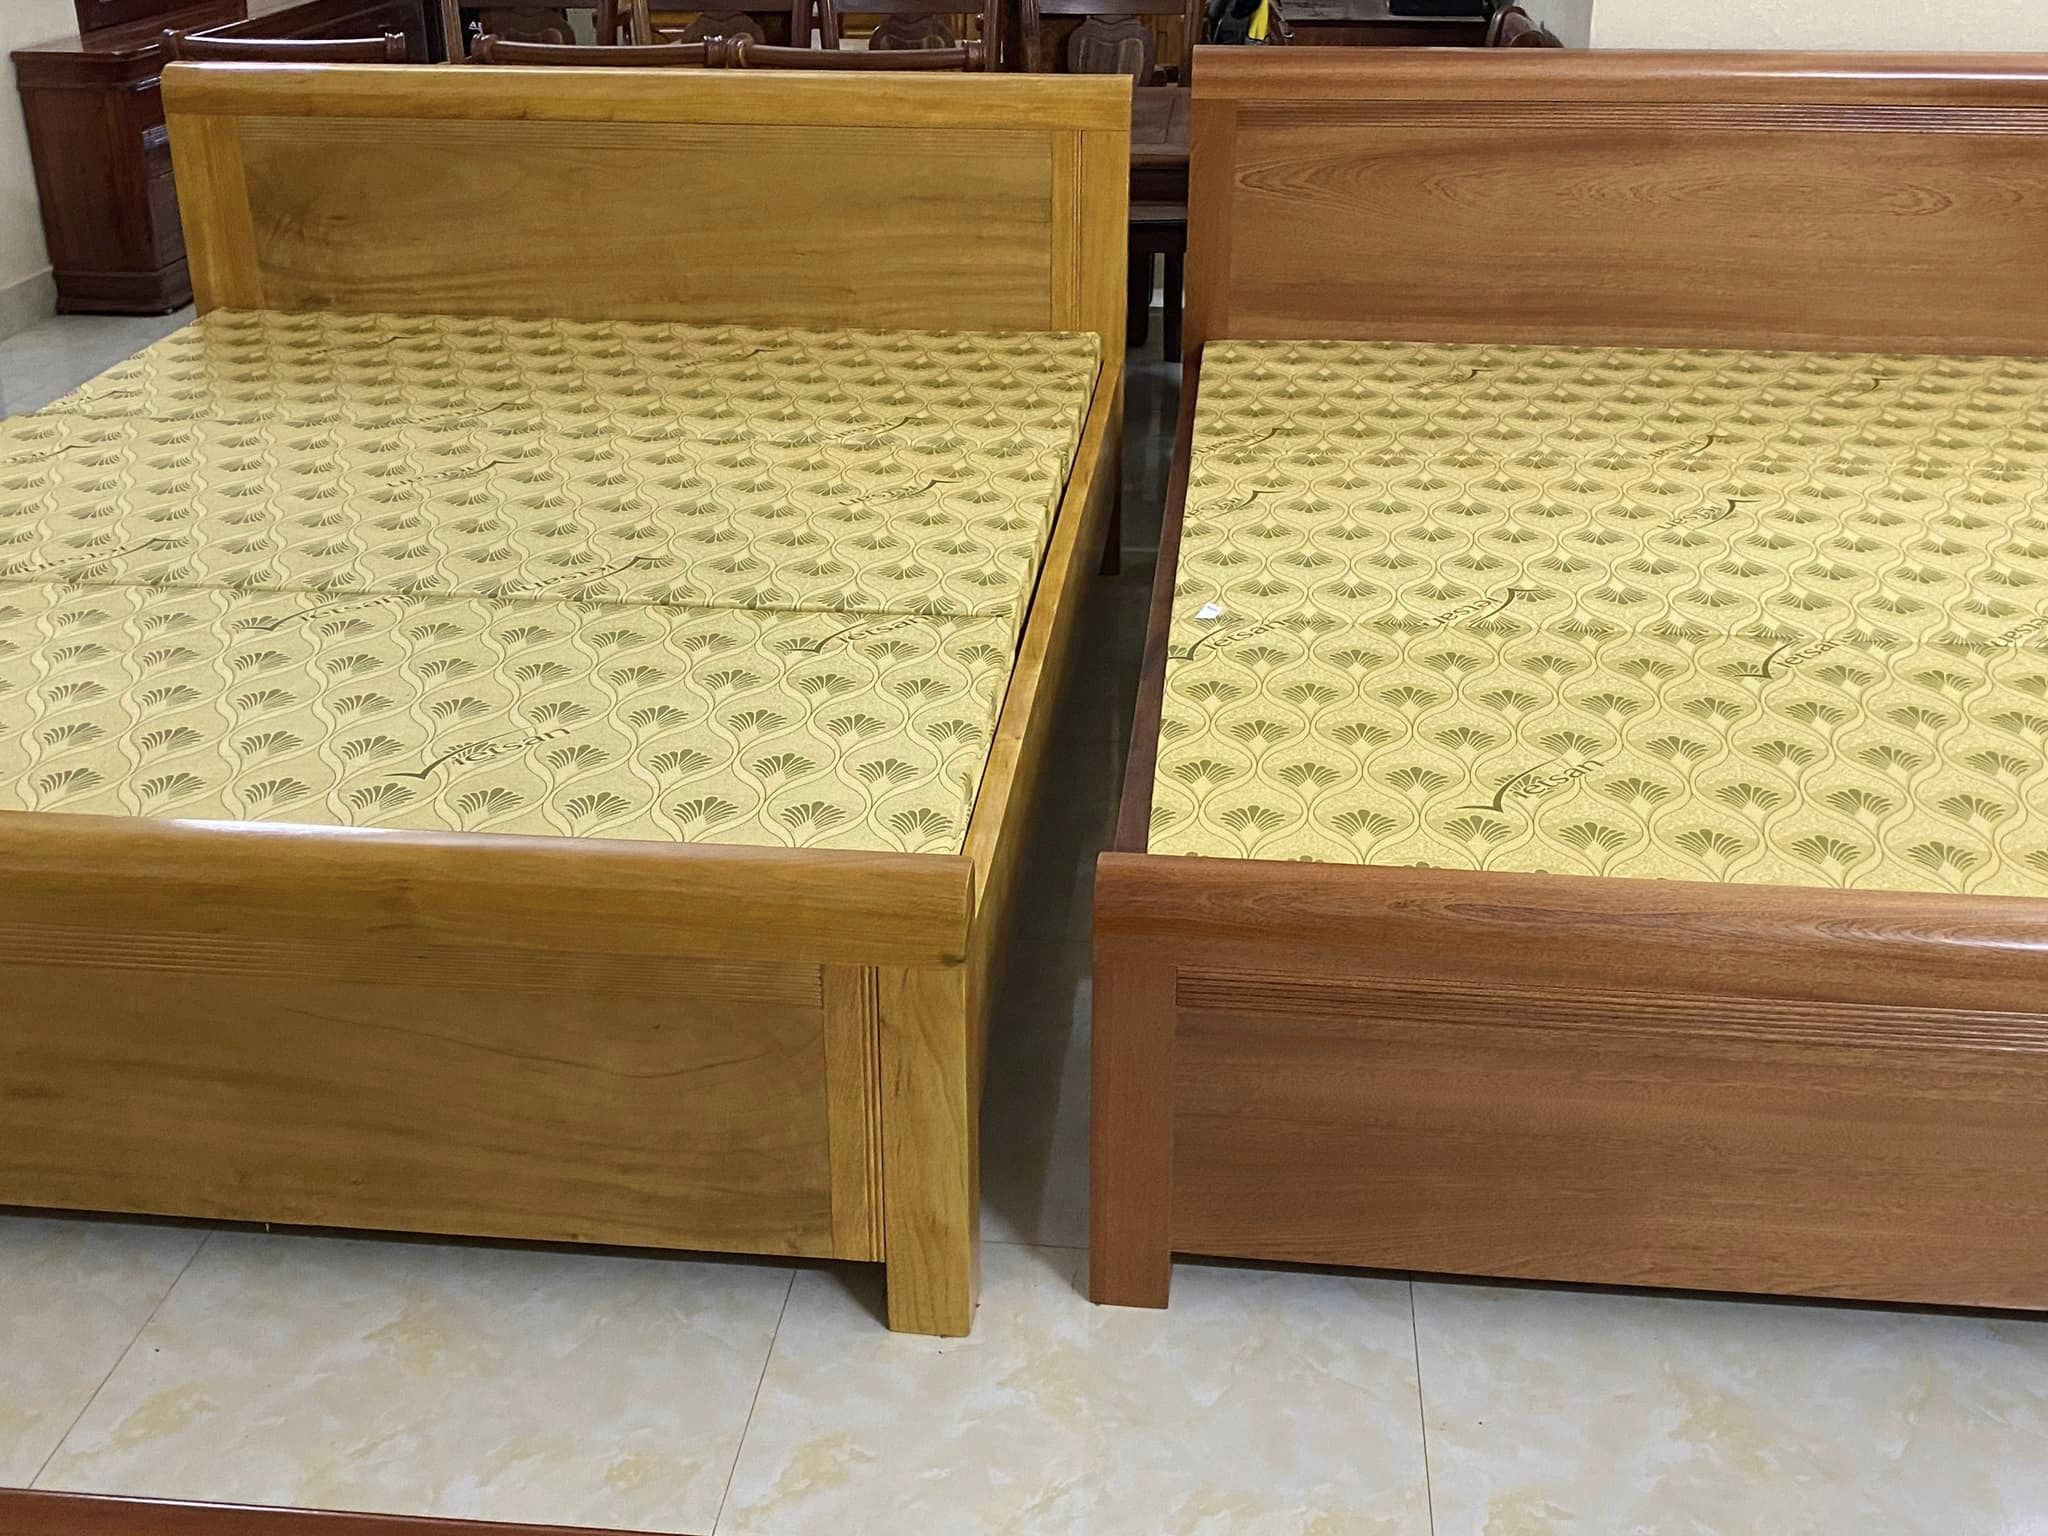 Mau giuong tai noi that do go Phuong Nam - Nội thất Phương Nam cơ sở sản xuất nội thất gỗ tự nhiên